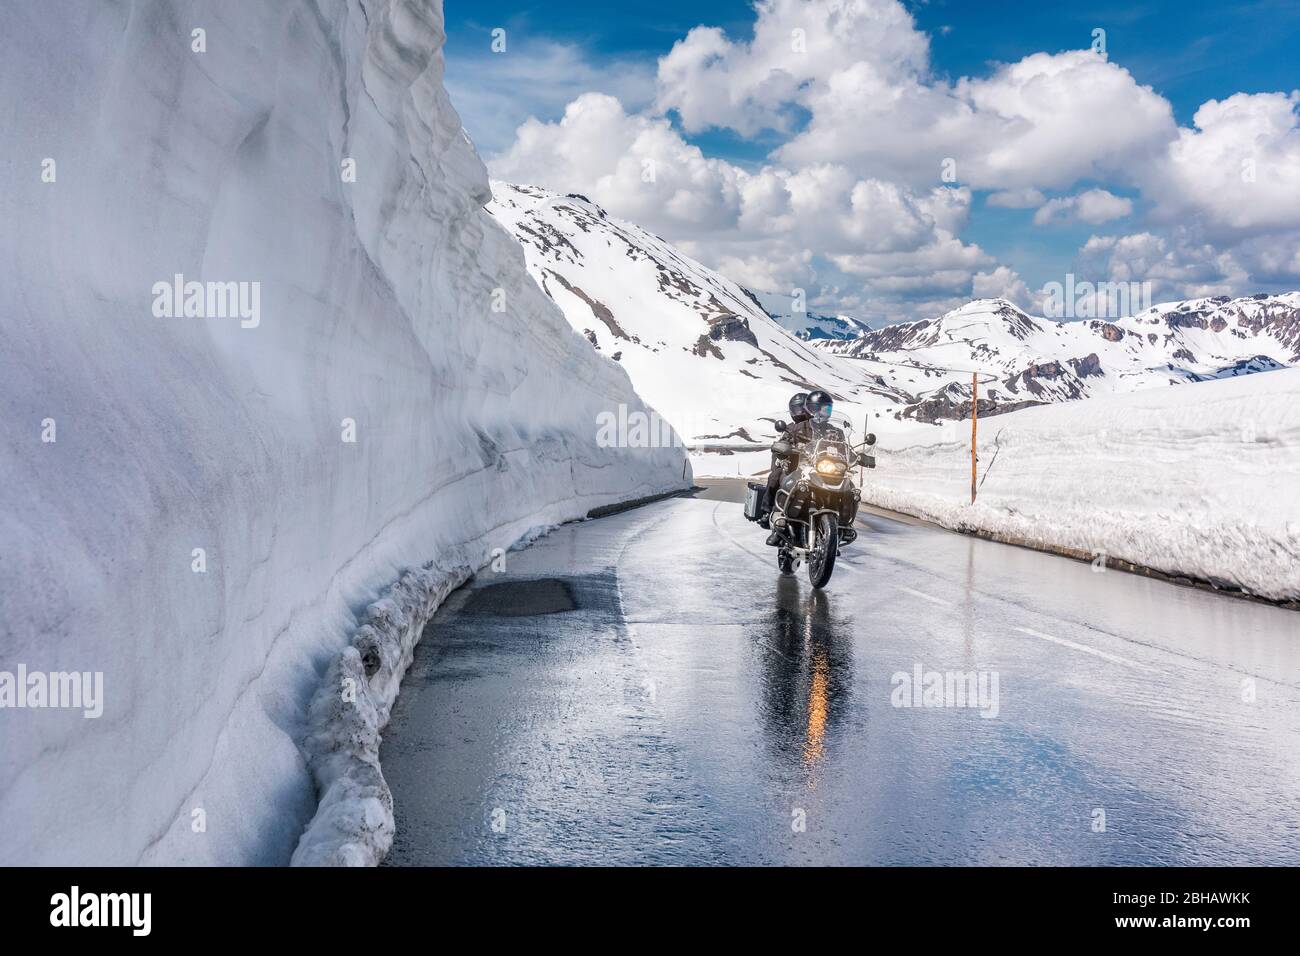 Neve alta immagini e fotografie stock ad alta risoluzione - Alamy